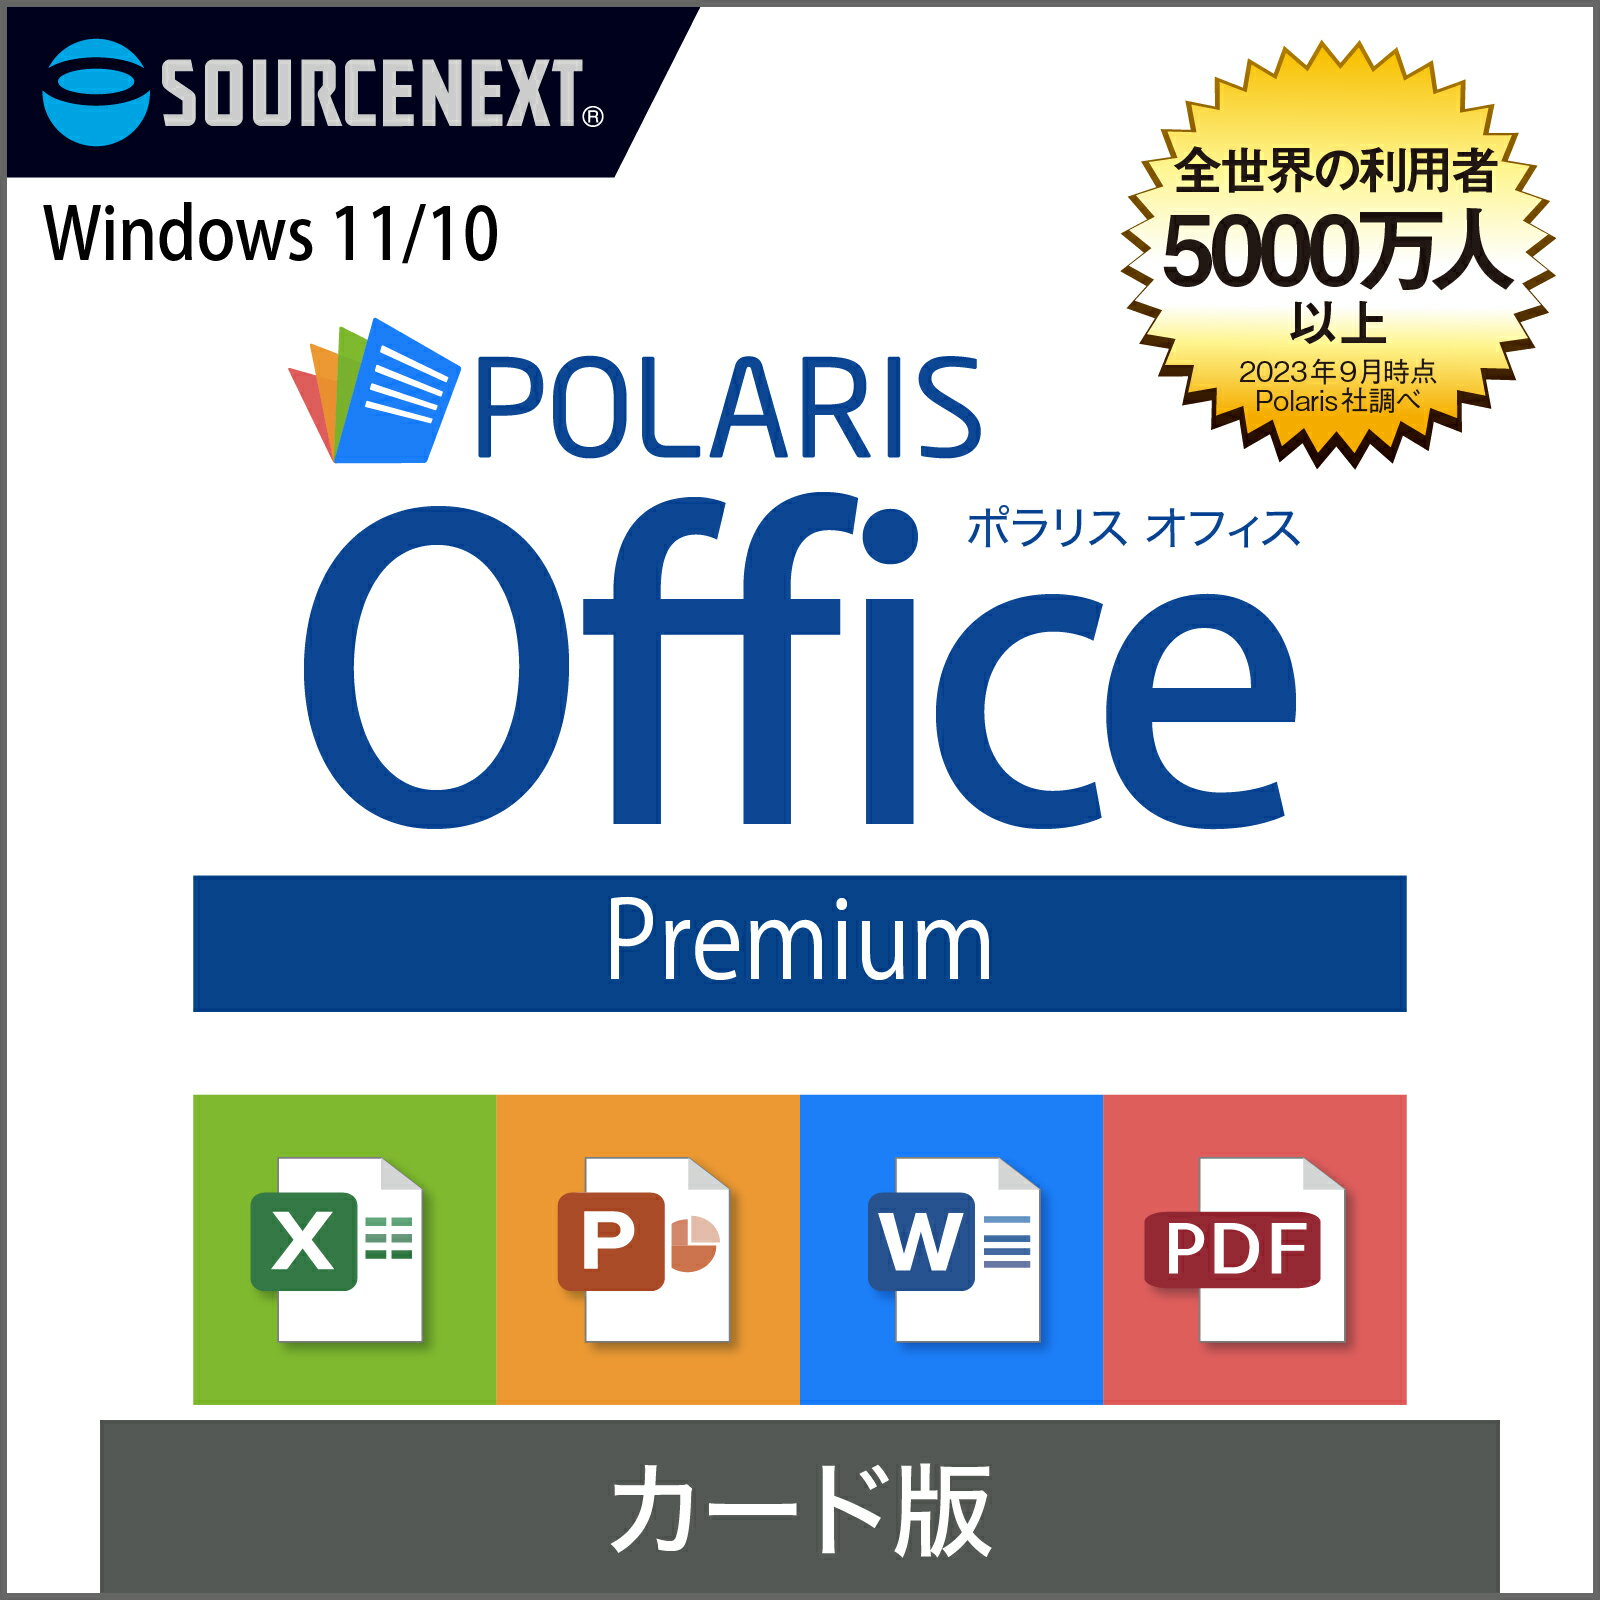 Polaris Office Premium  ポラリス Microsoft Office オフィス 互換性 Excel PowerPoint Word パワーポイント エクセルソフト ワード